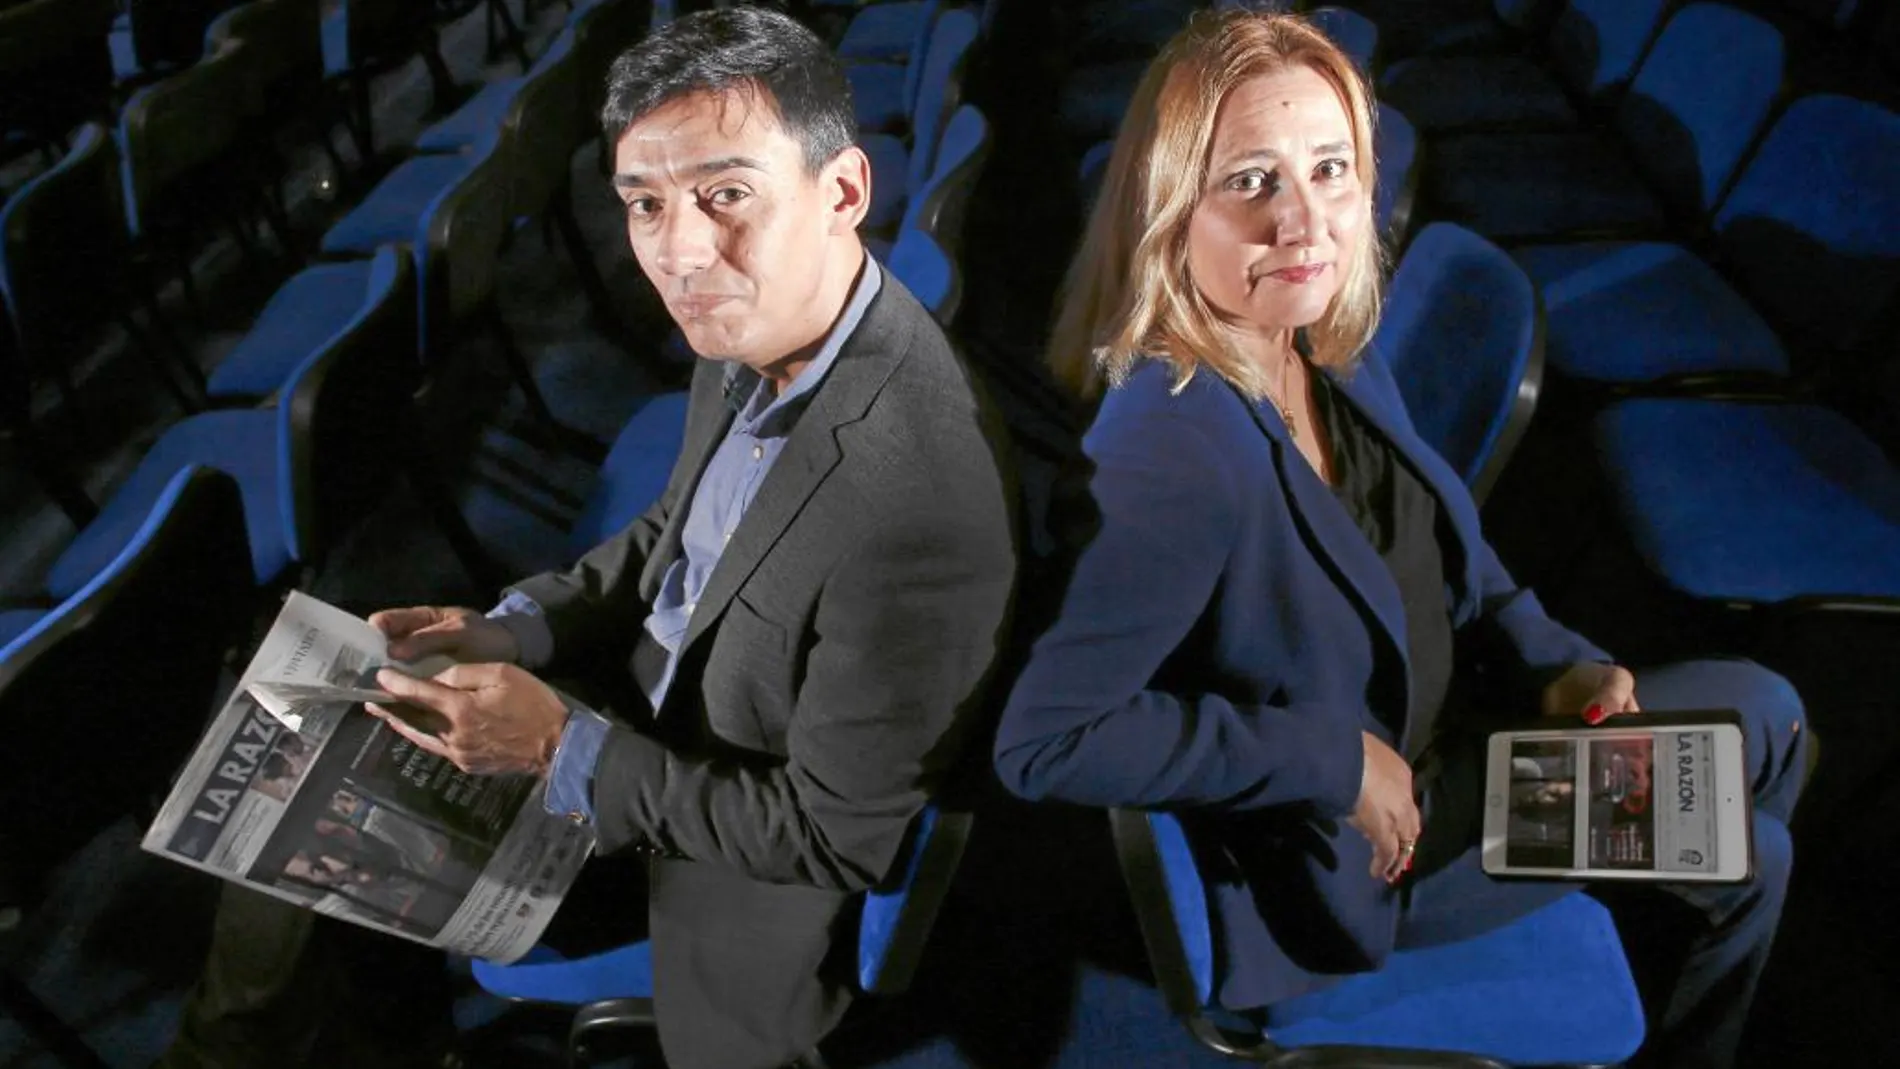 Almudena Negro y Jorge Vilches. Periodista y politólogo